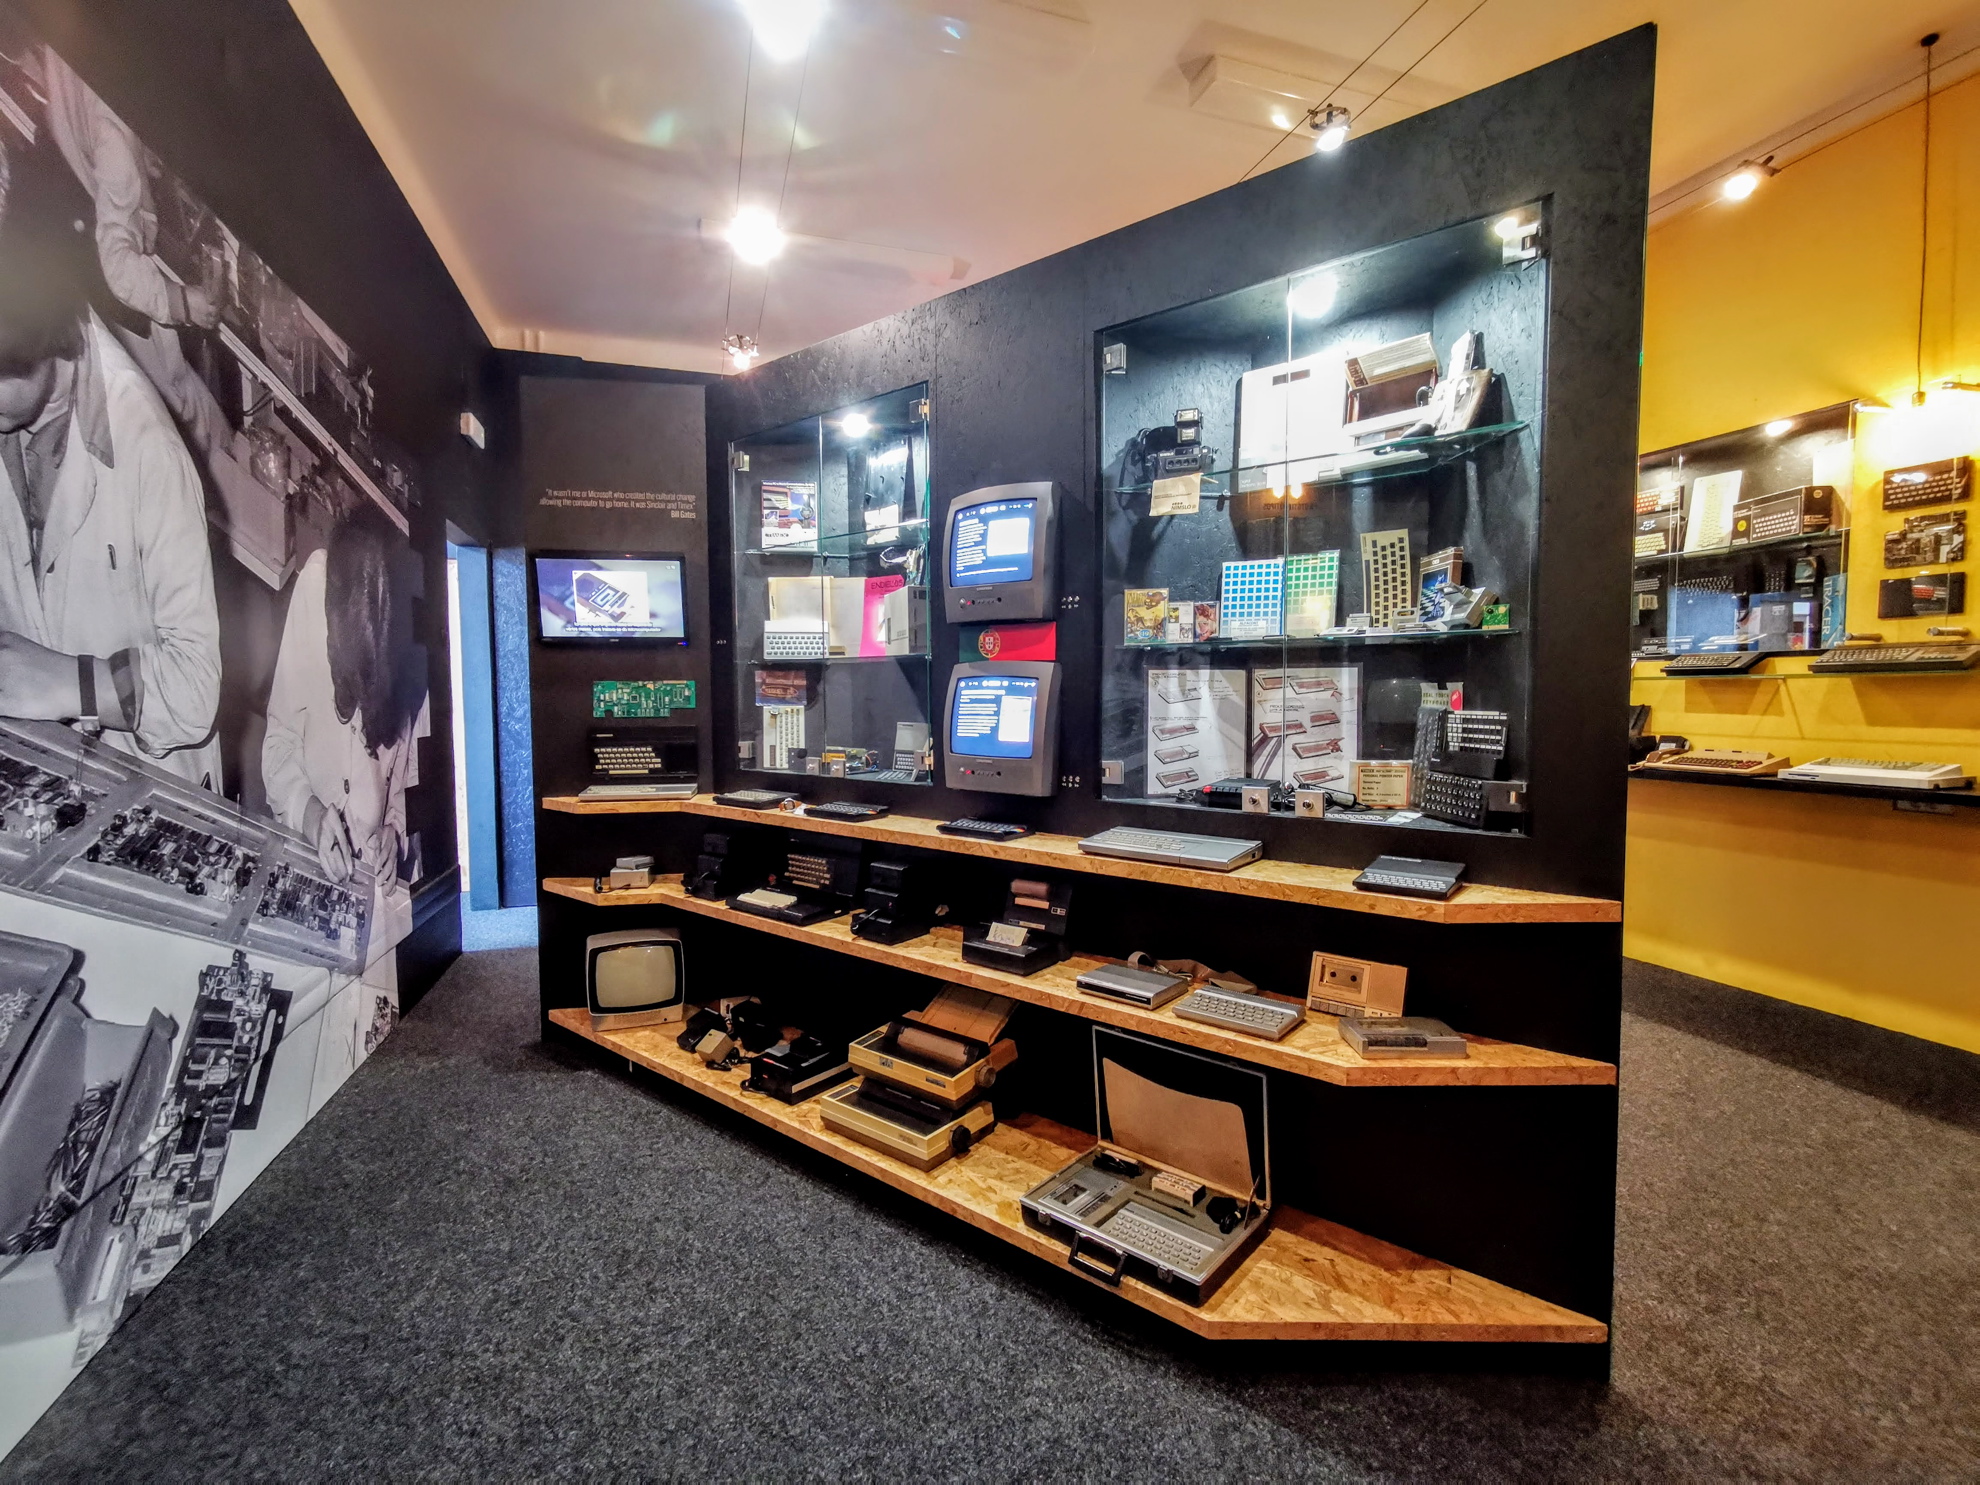 LOAD ZX Spectrum Museum